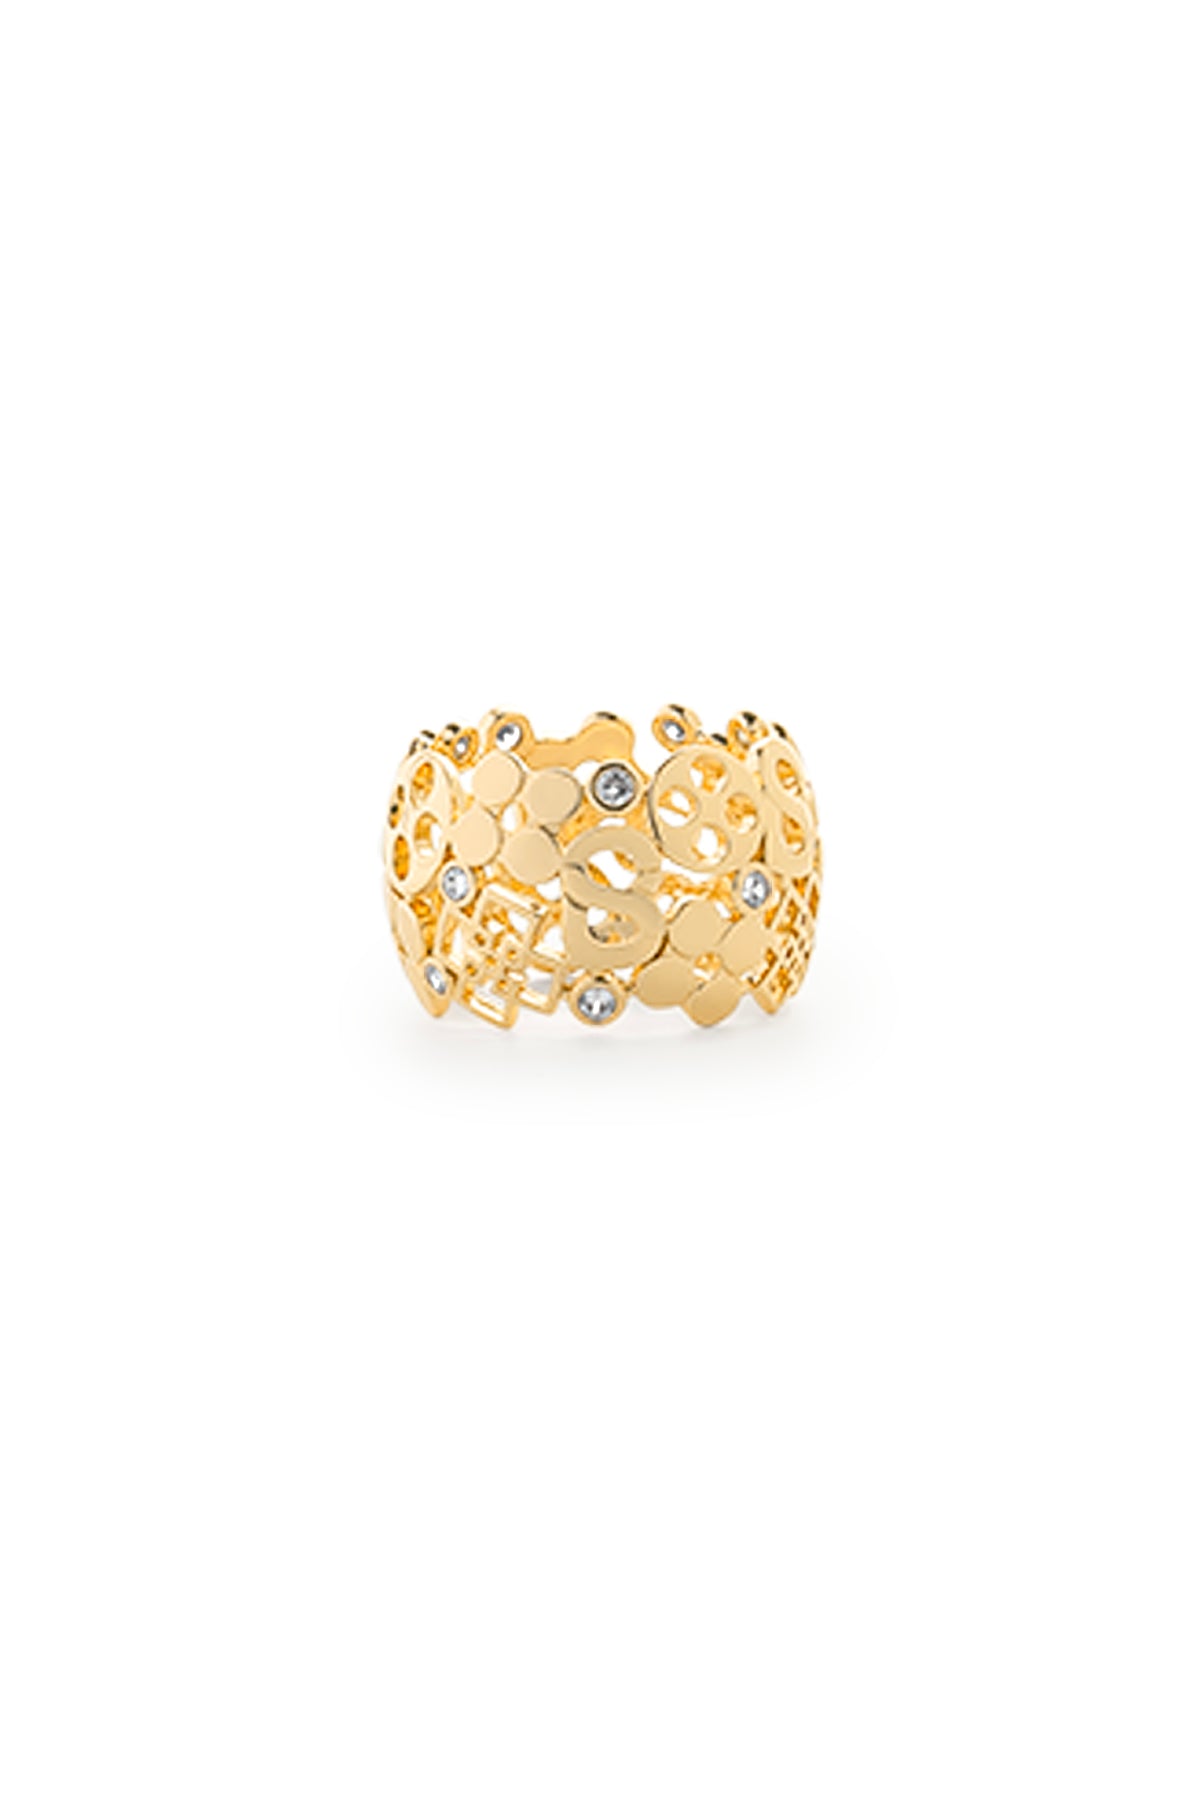 Monogram Ring Brooch - Gold